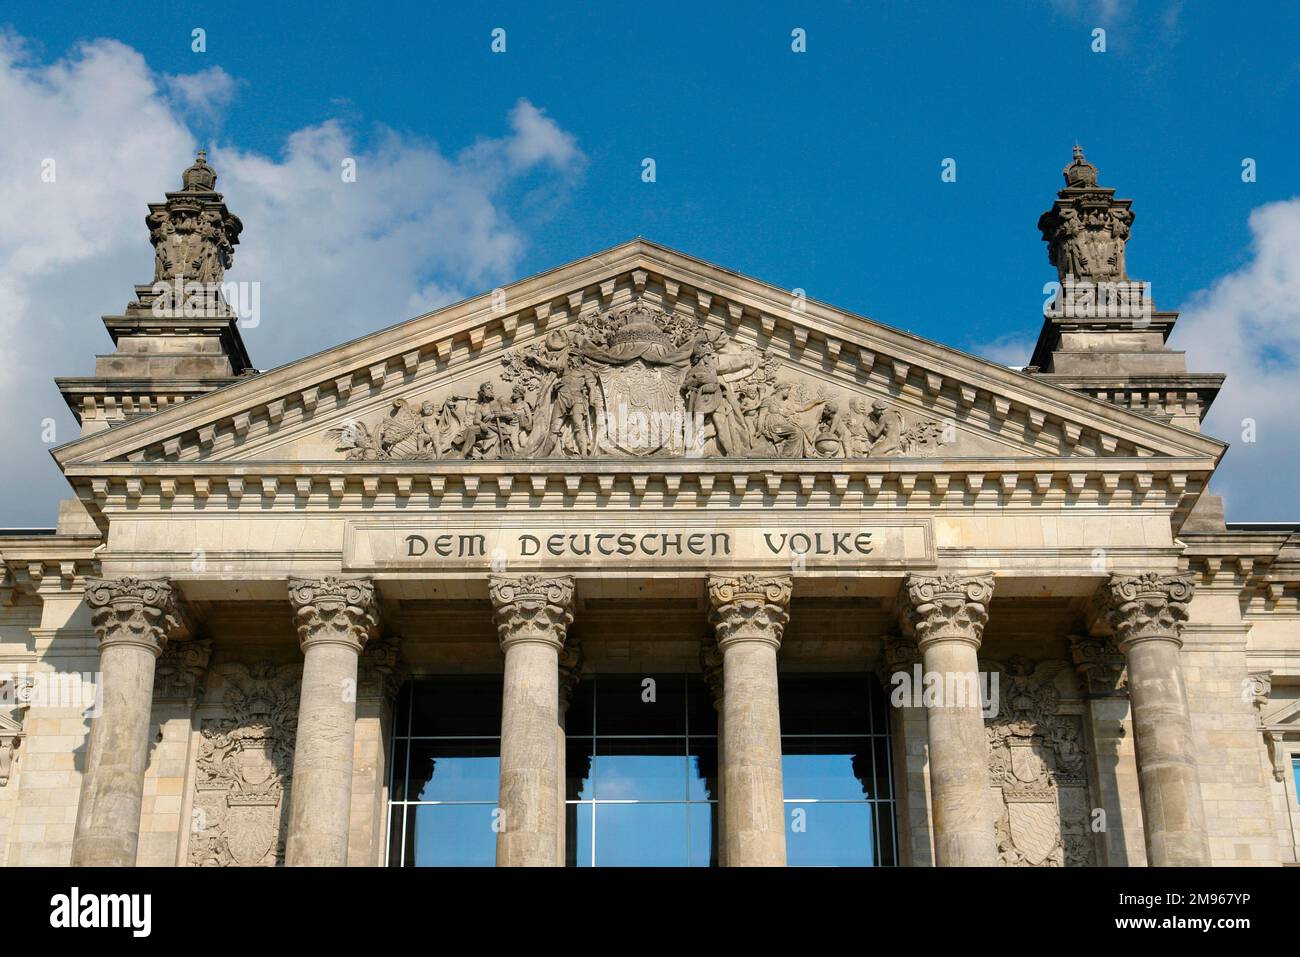 Un particolare dell'ingresso al palazzo del Reichstag a Berlino, in Germania, è stato aperto nel 1894 per ospitare il parlamento tedesco. Fu gravemente danneggiata da un incendio nel 1933 e la sua ricostruzione non fu completata fino al 1999. La dedica, "DEM Deutschen Volke", "per il popolo tedesco", è iscritta sull'architrave. Foto Stock